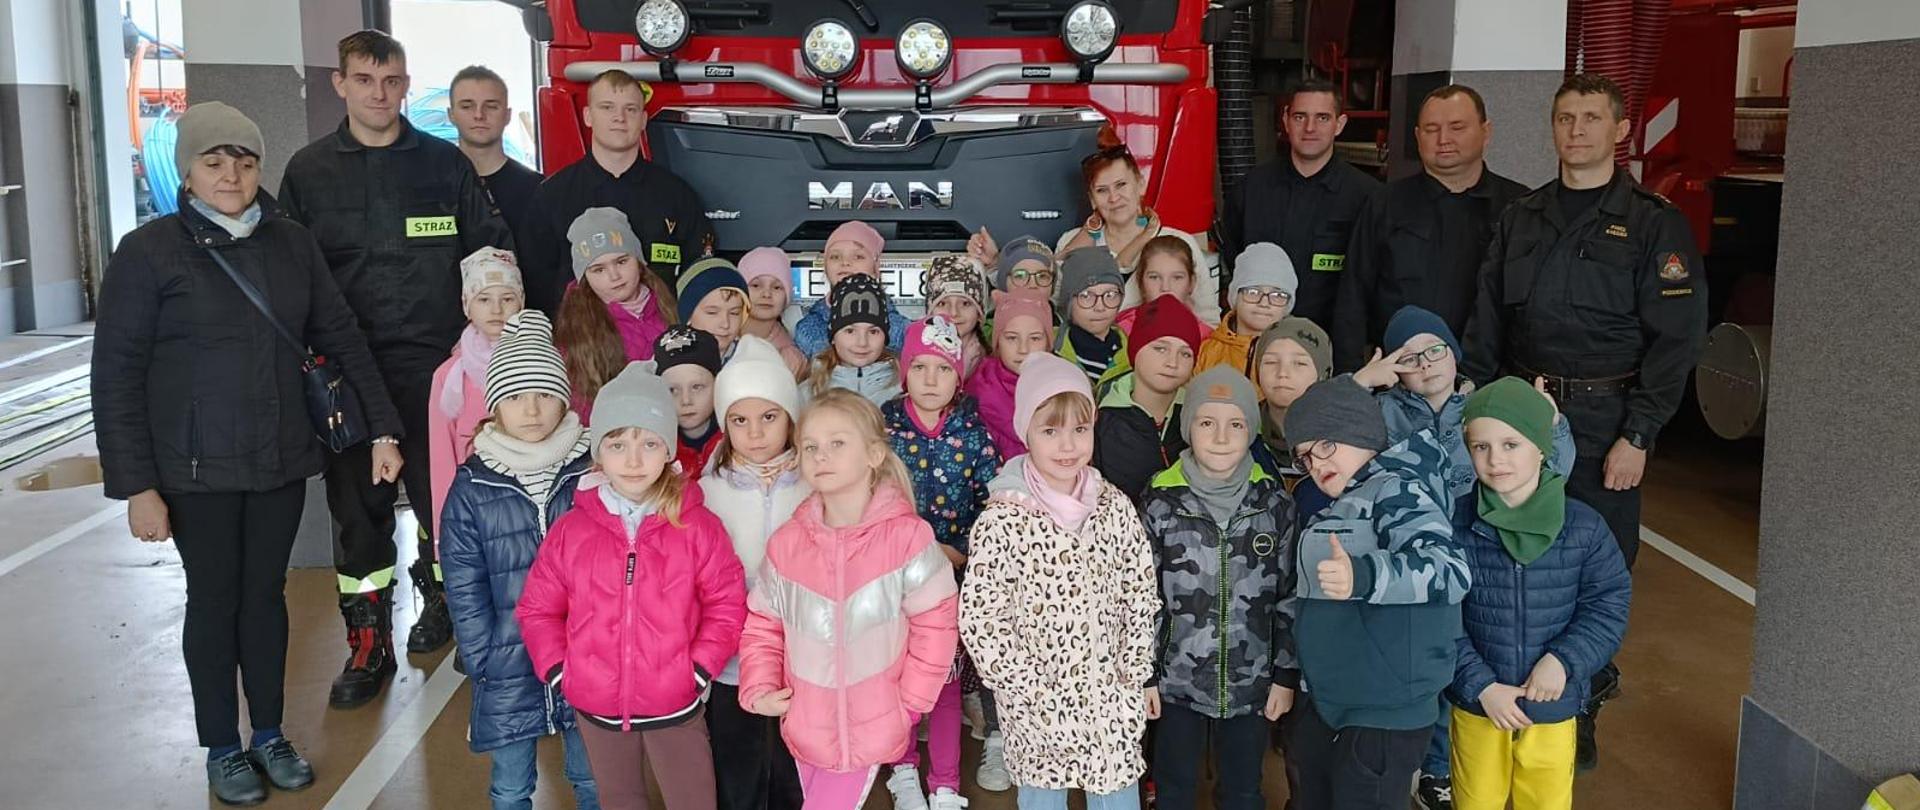 zdjęcie grupowe dzieci, dwóch opiekunek i sześciu strażaków na tle wozu strażackiego 